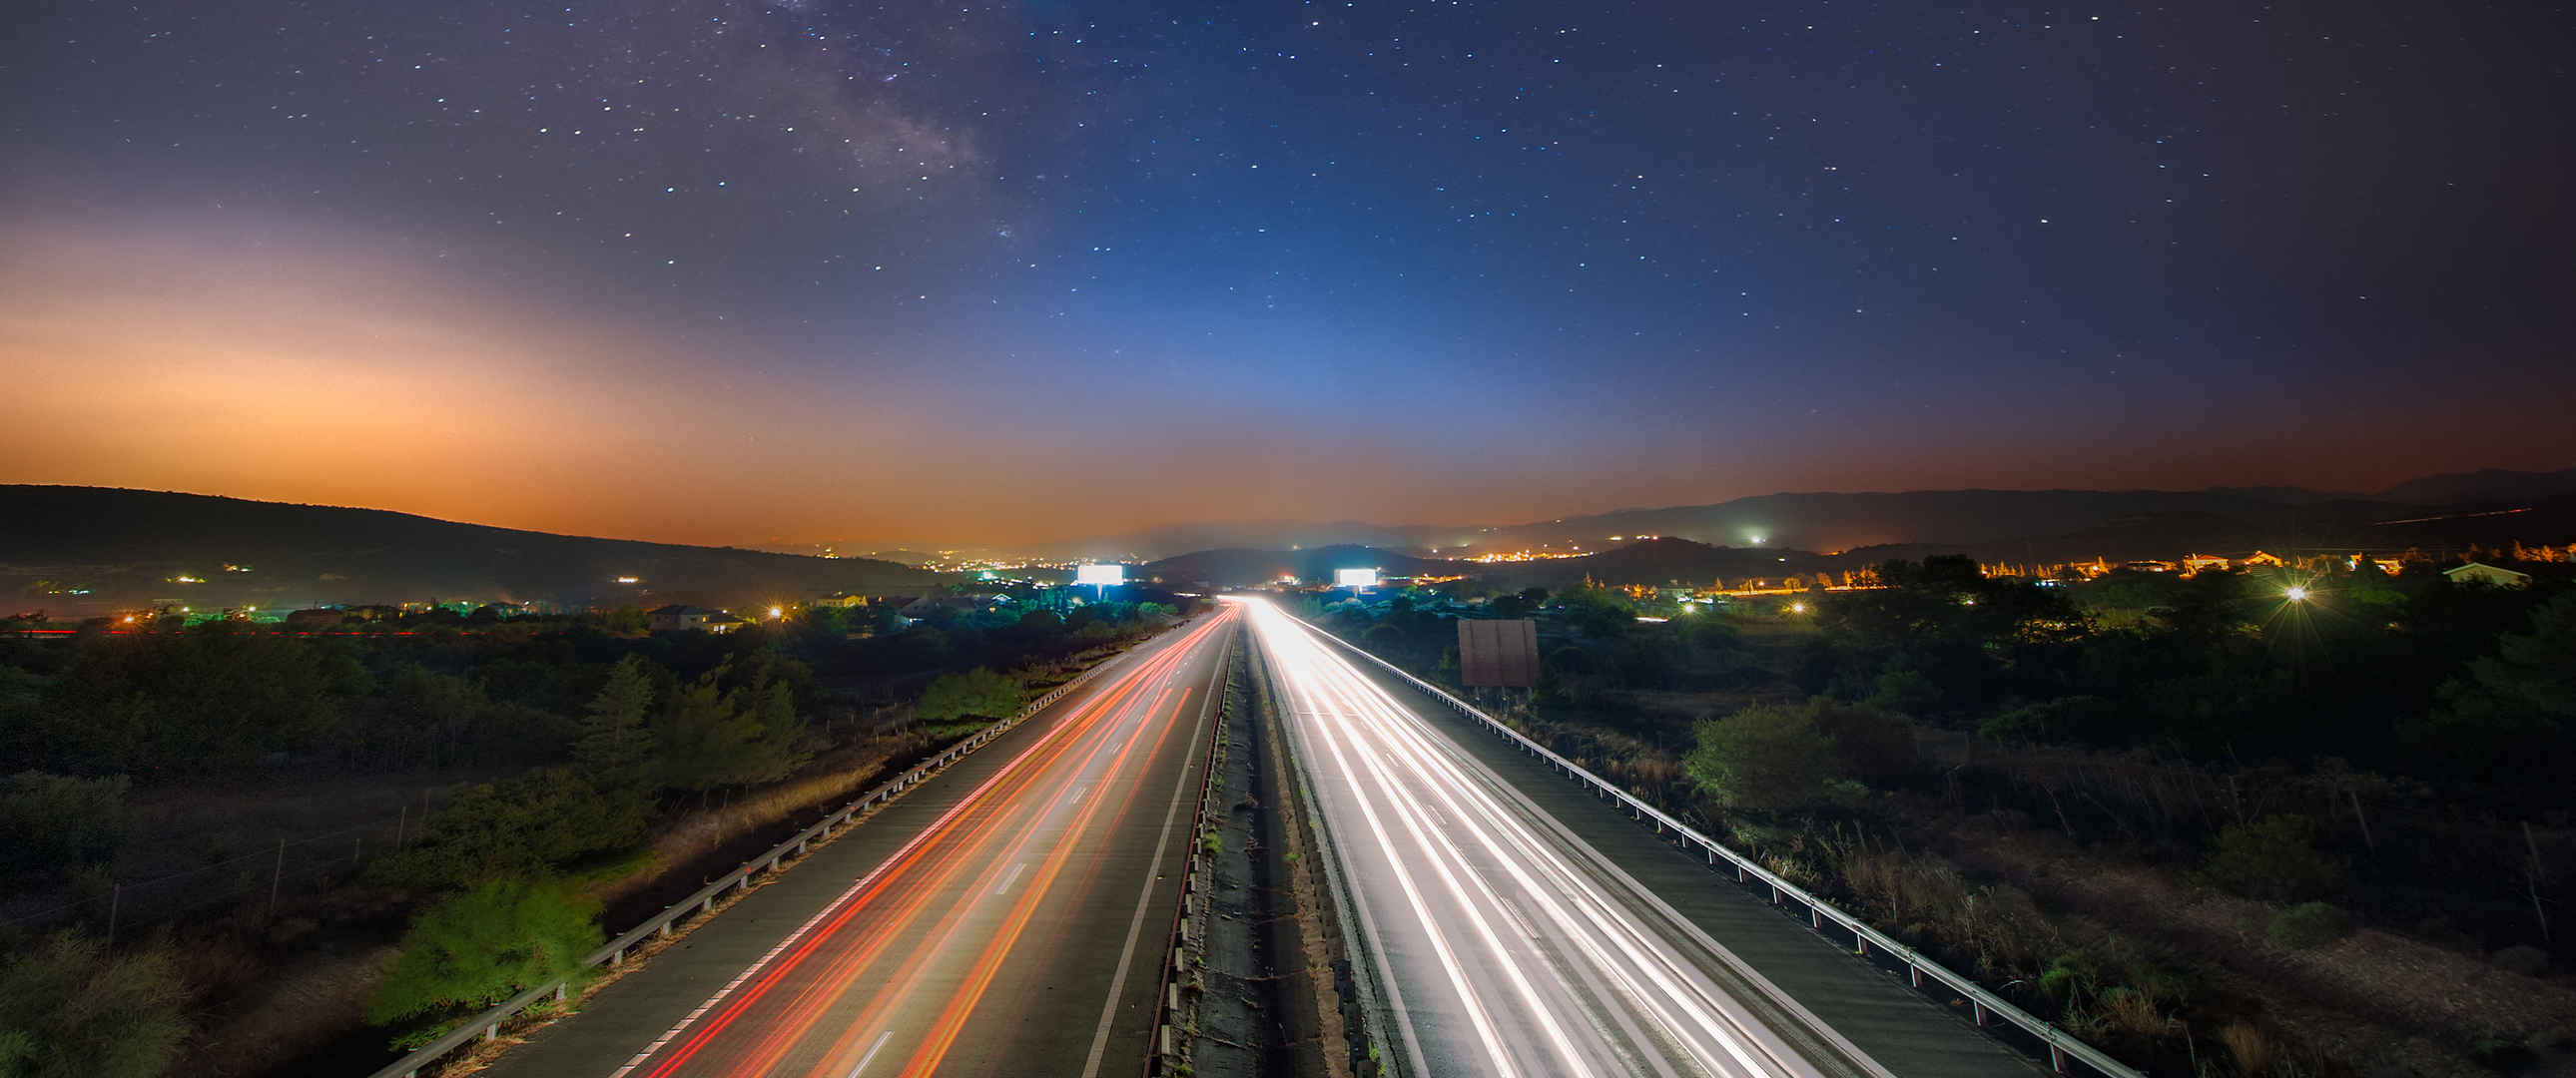 向利马索尔塞浦路斯市方向行驶的高速公路 天空中的银河 3440x1440风景壁纸